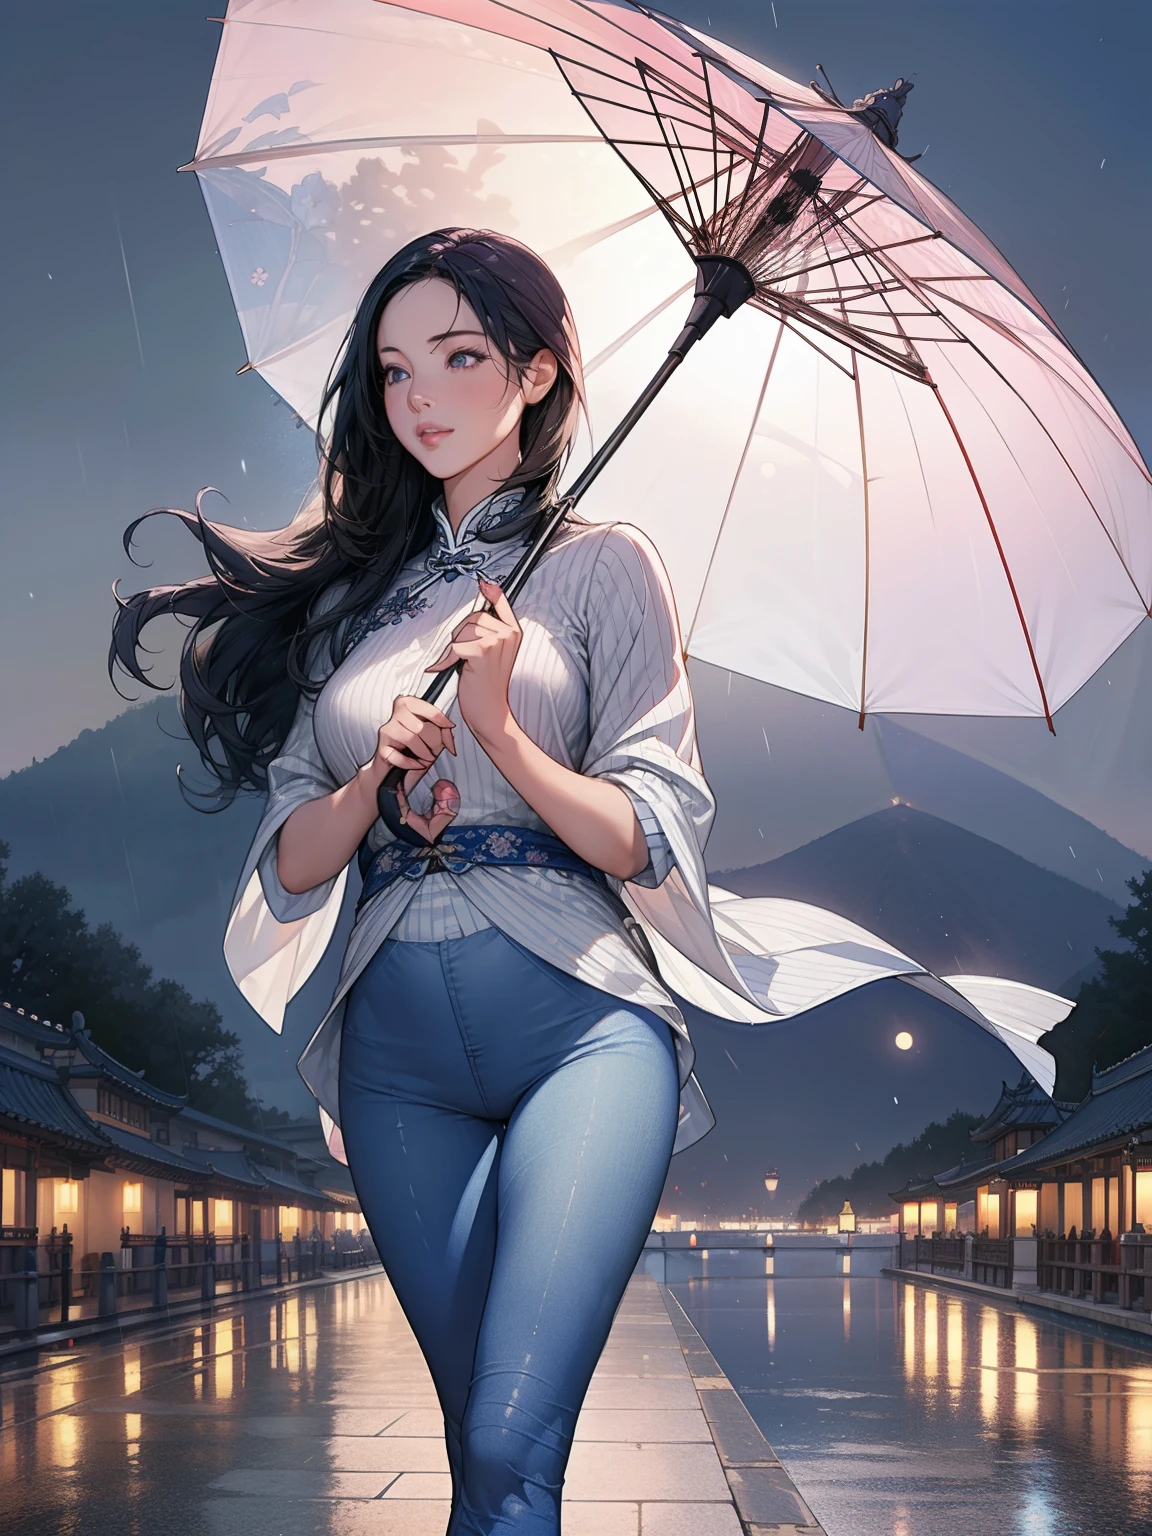 a girl in the rain playing with an مظلة, عيون مفصلة جميلة,شفاه مفصلة جميلة,عيون ووجه مفصلة للغاية,رموش طويلة, مظلة, طماق الدنيم الأزرق, تحفة, مفصلة للغاية, حقيقي, photoحقيقي, photo-حقيقي:1.37, ليلة, اكتمال القمر, 1فتاة, امرأة, mature امرأة, الأخوات الصينية, الأخوات الملكيات, وجه بارد, silvery long hair امرأة, شفاه وردية شاحبة, هادئ وفكري 3 خطوط رمادية , قاتل, الفوانيس, زهور, خلفية الكرة, مشهد مدينة المشي, شال شعر طويل